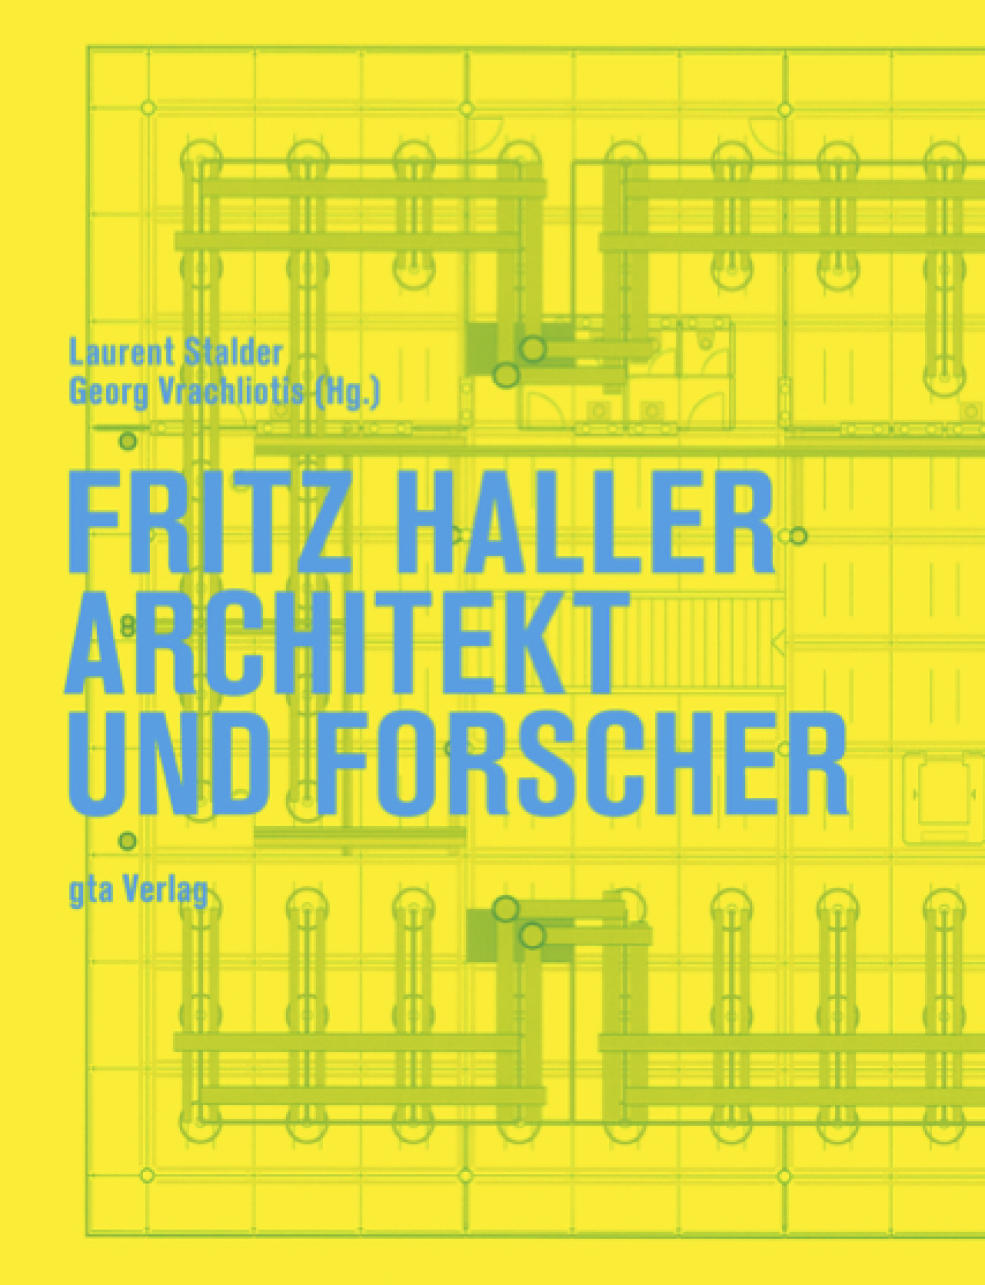 Vergrösserte Ansicht: Fritz Haller, Architekt und Forscher, 2015